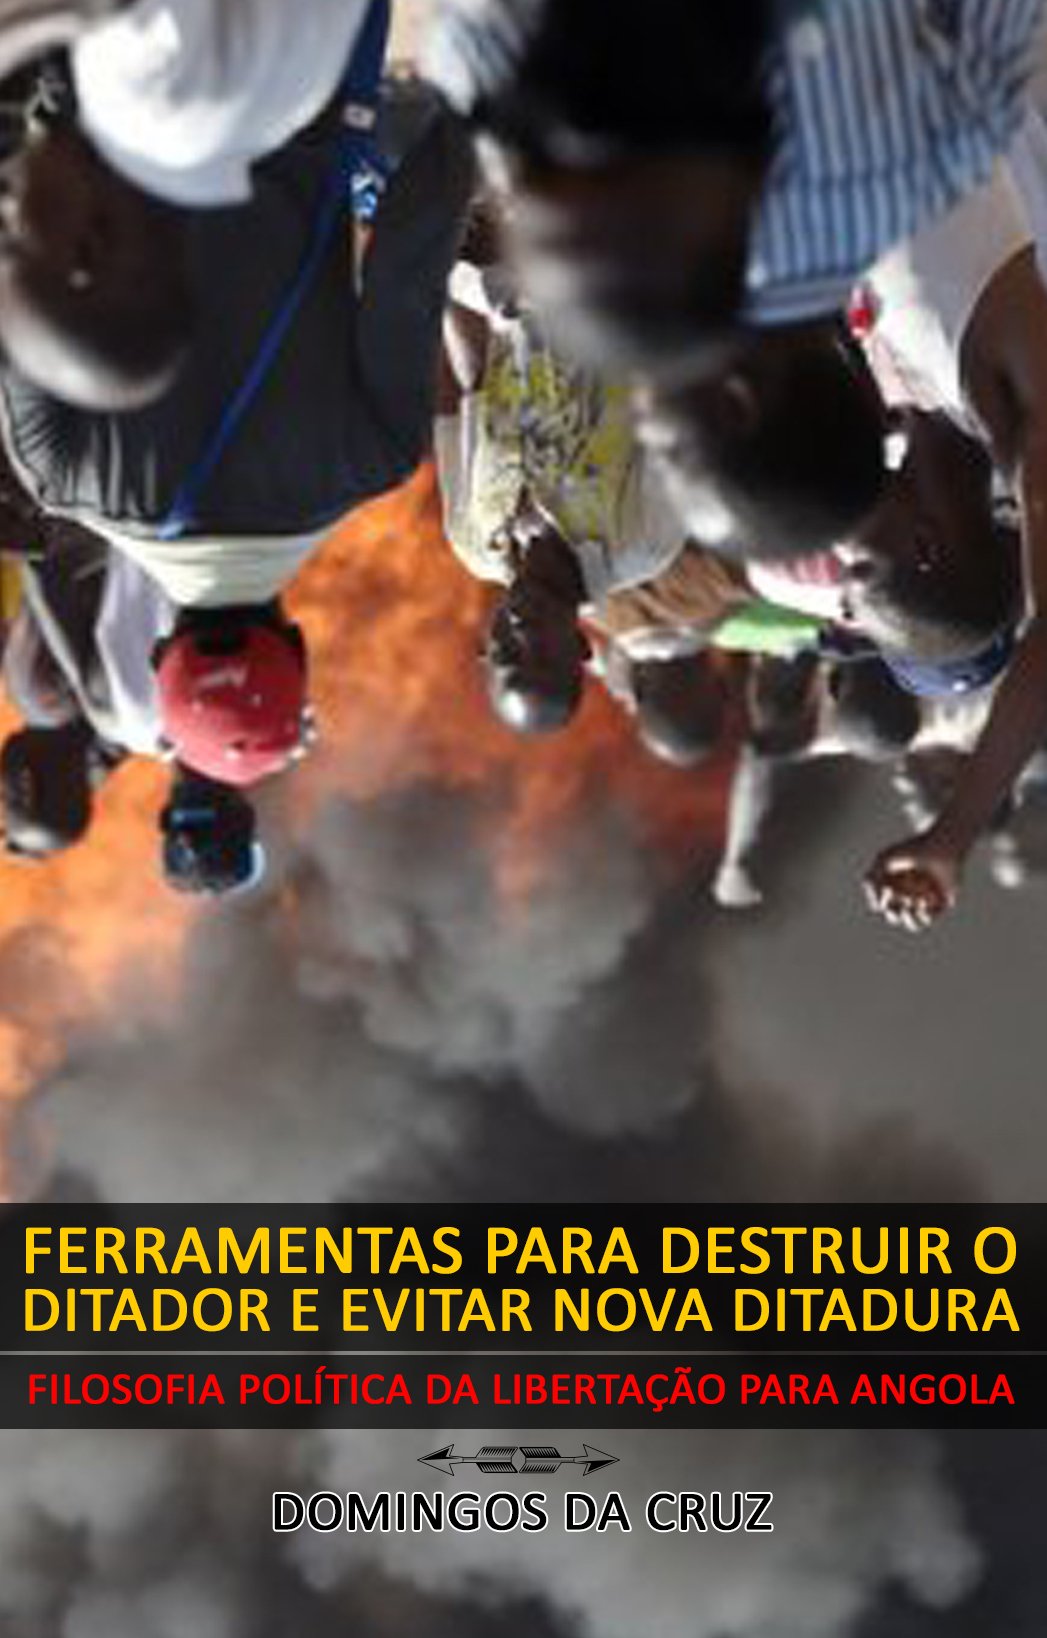 Capa do livro "Ferramentas para destruir o ditador e evitar nova ditadura", do jornalista angolano Domingos da Cruz